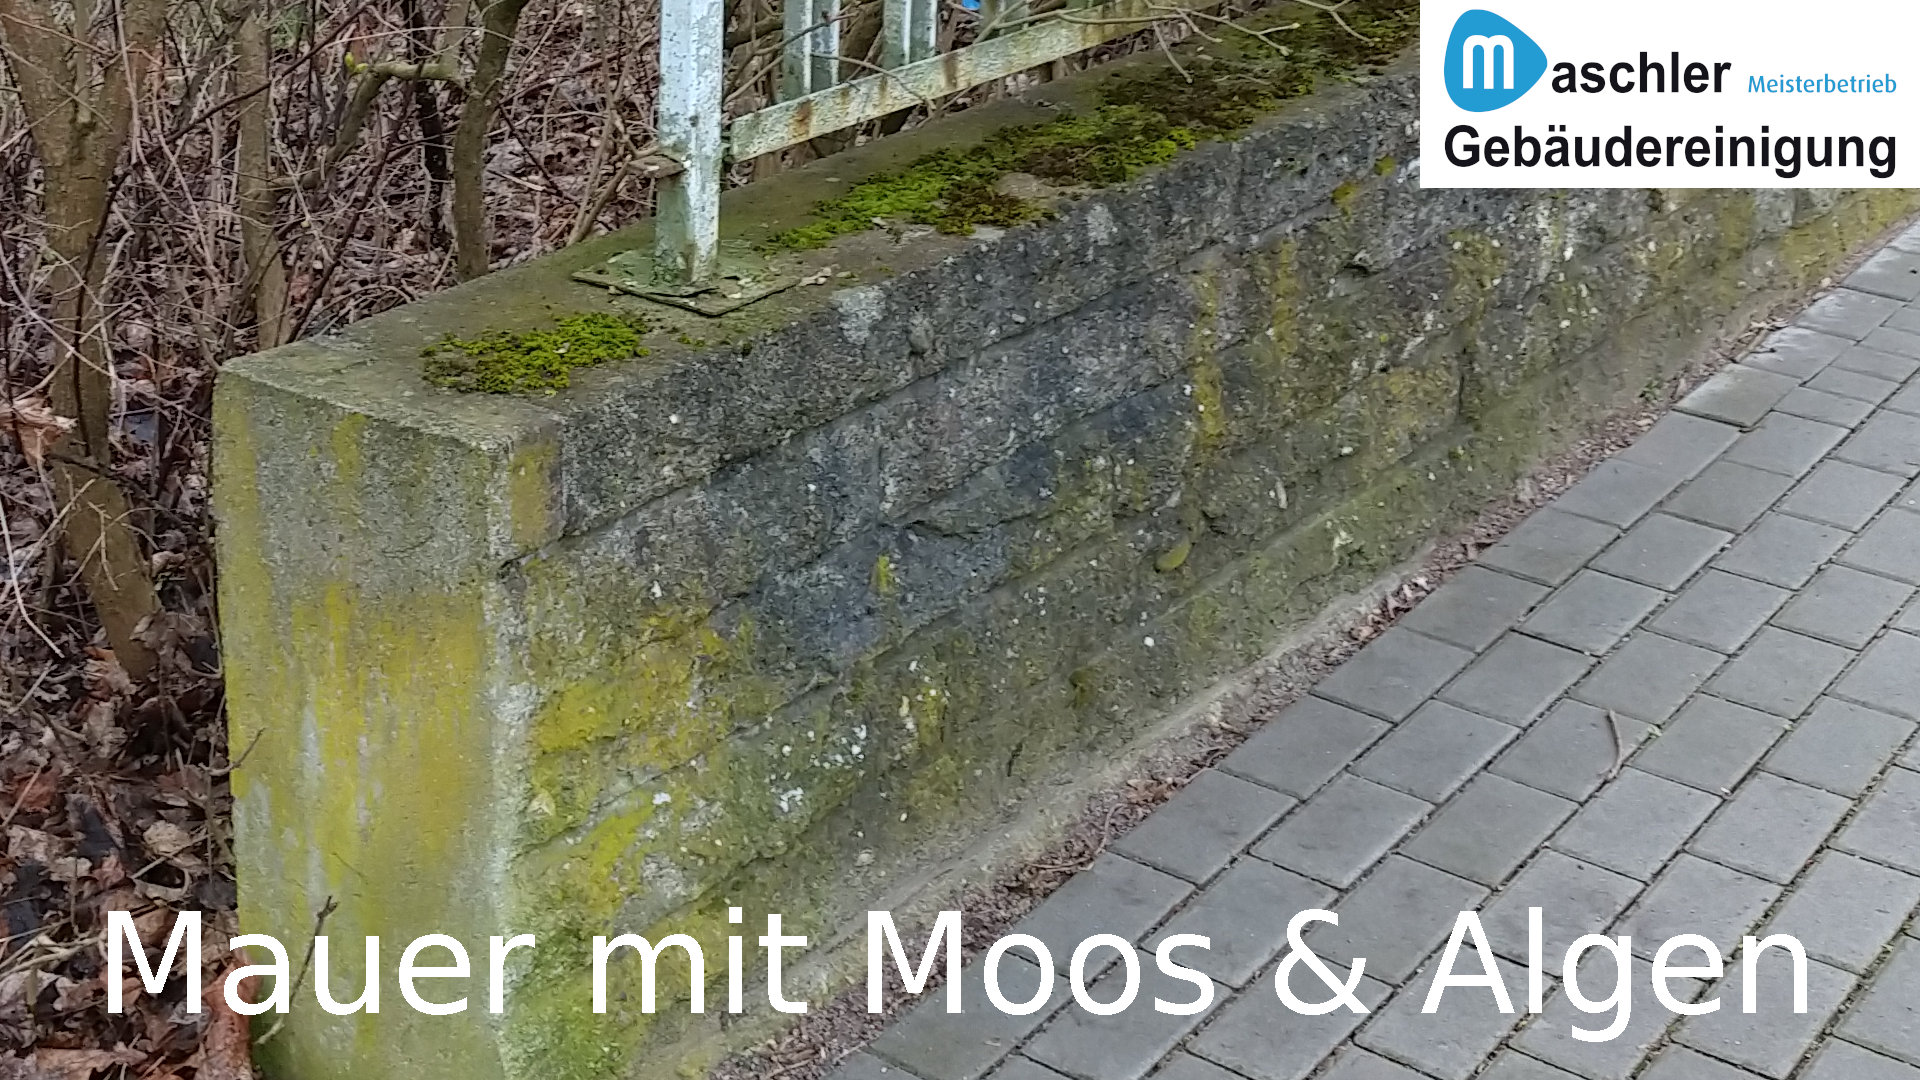 Mauer mit Moos - Gebäudereinigung Maschler Schwerin